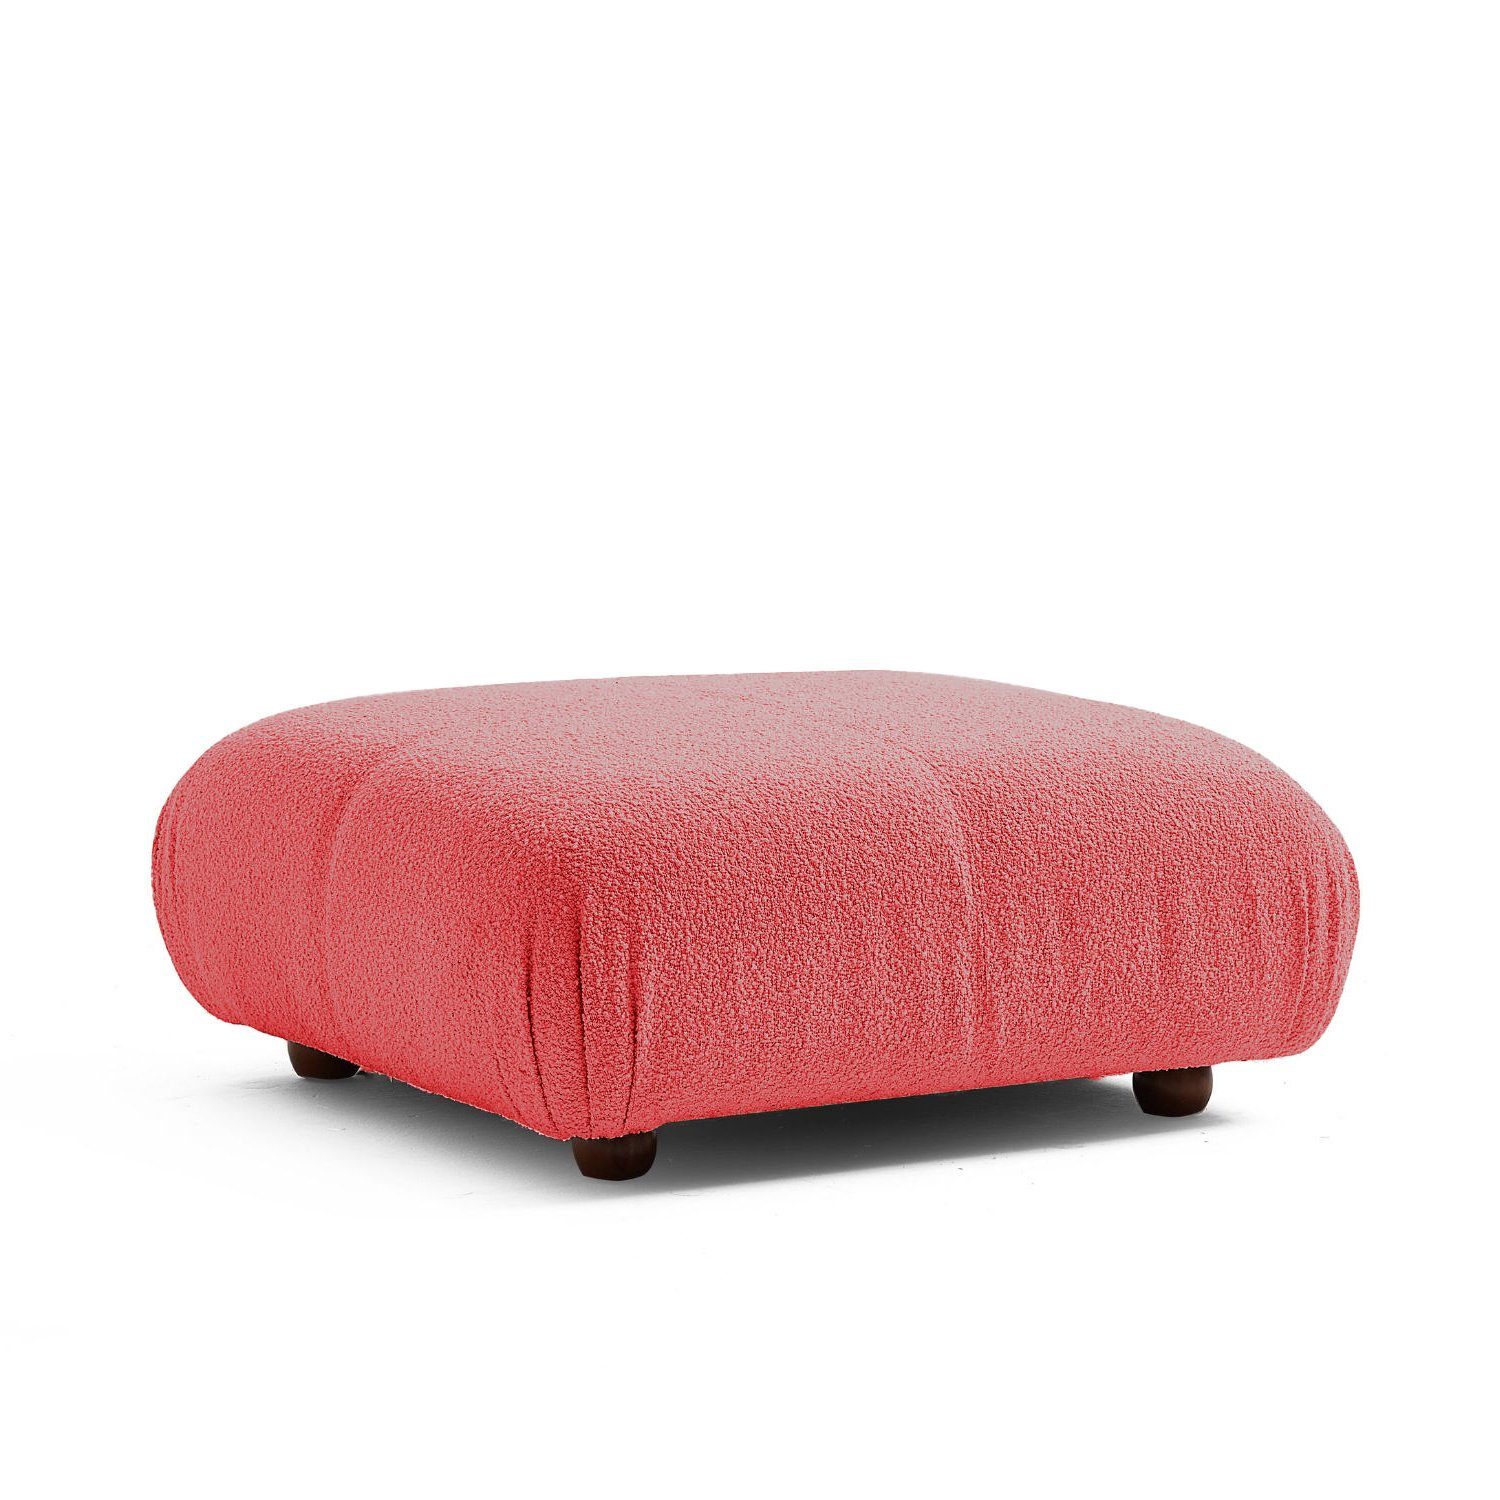 Touch me Sofa Knuffiges Sitzmöbel neueste Generation aus Komfortschaum Rot-Lieferung und Aufbau im Preis enthalten!